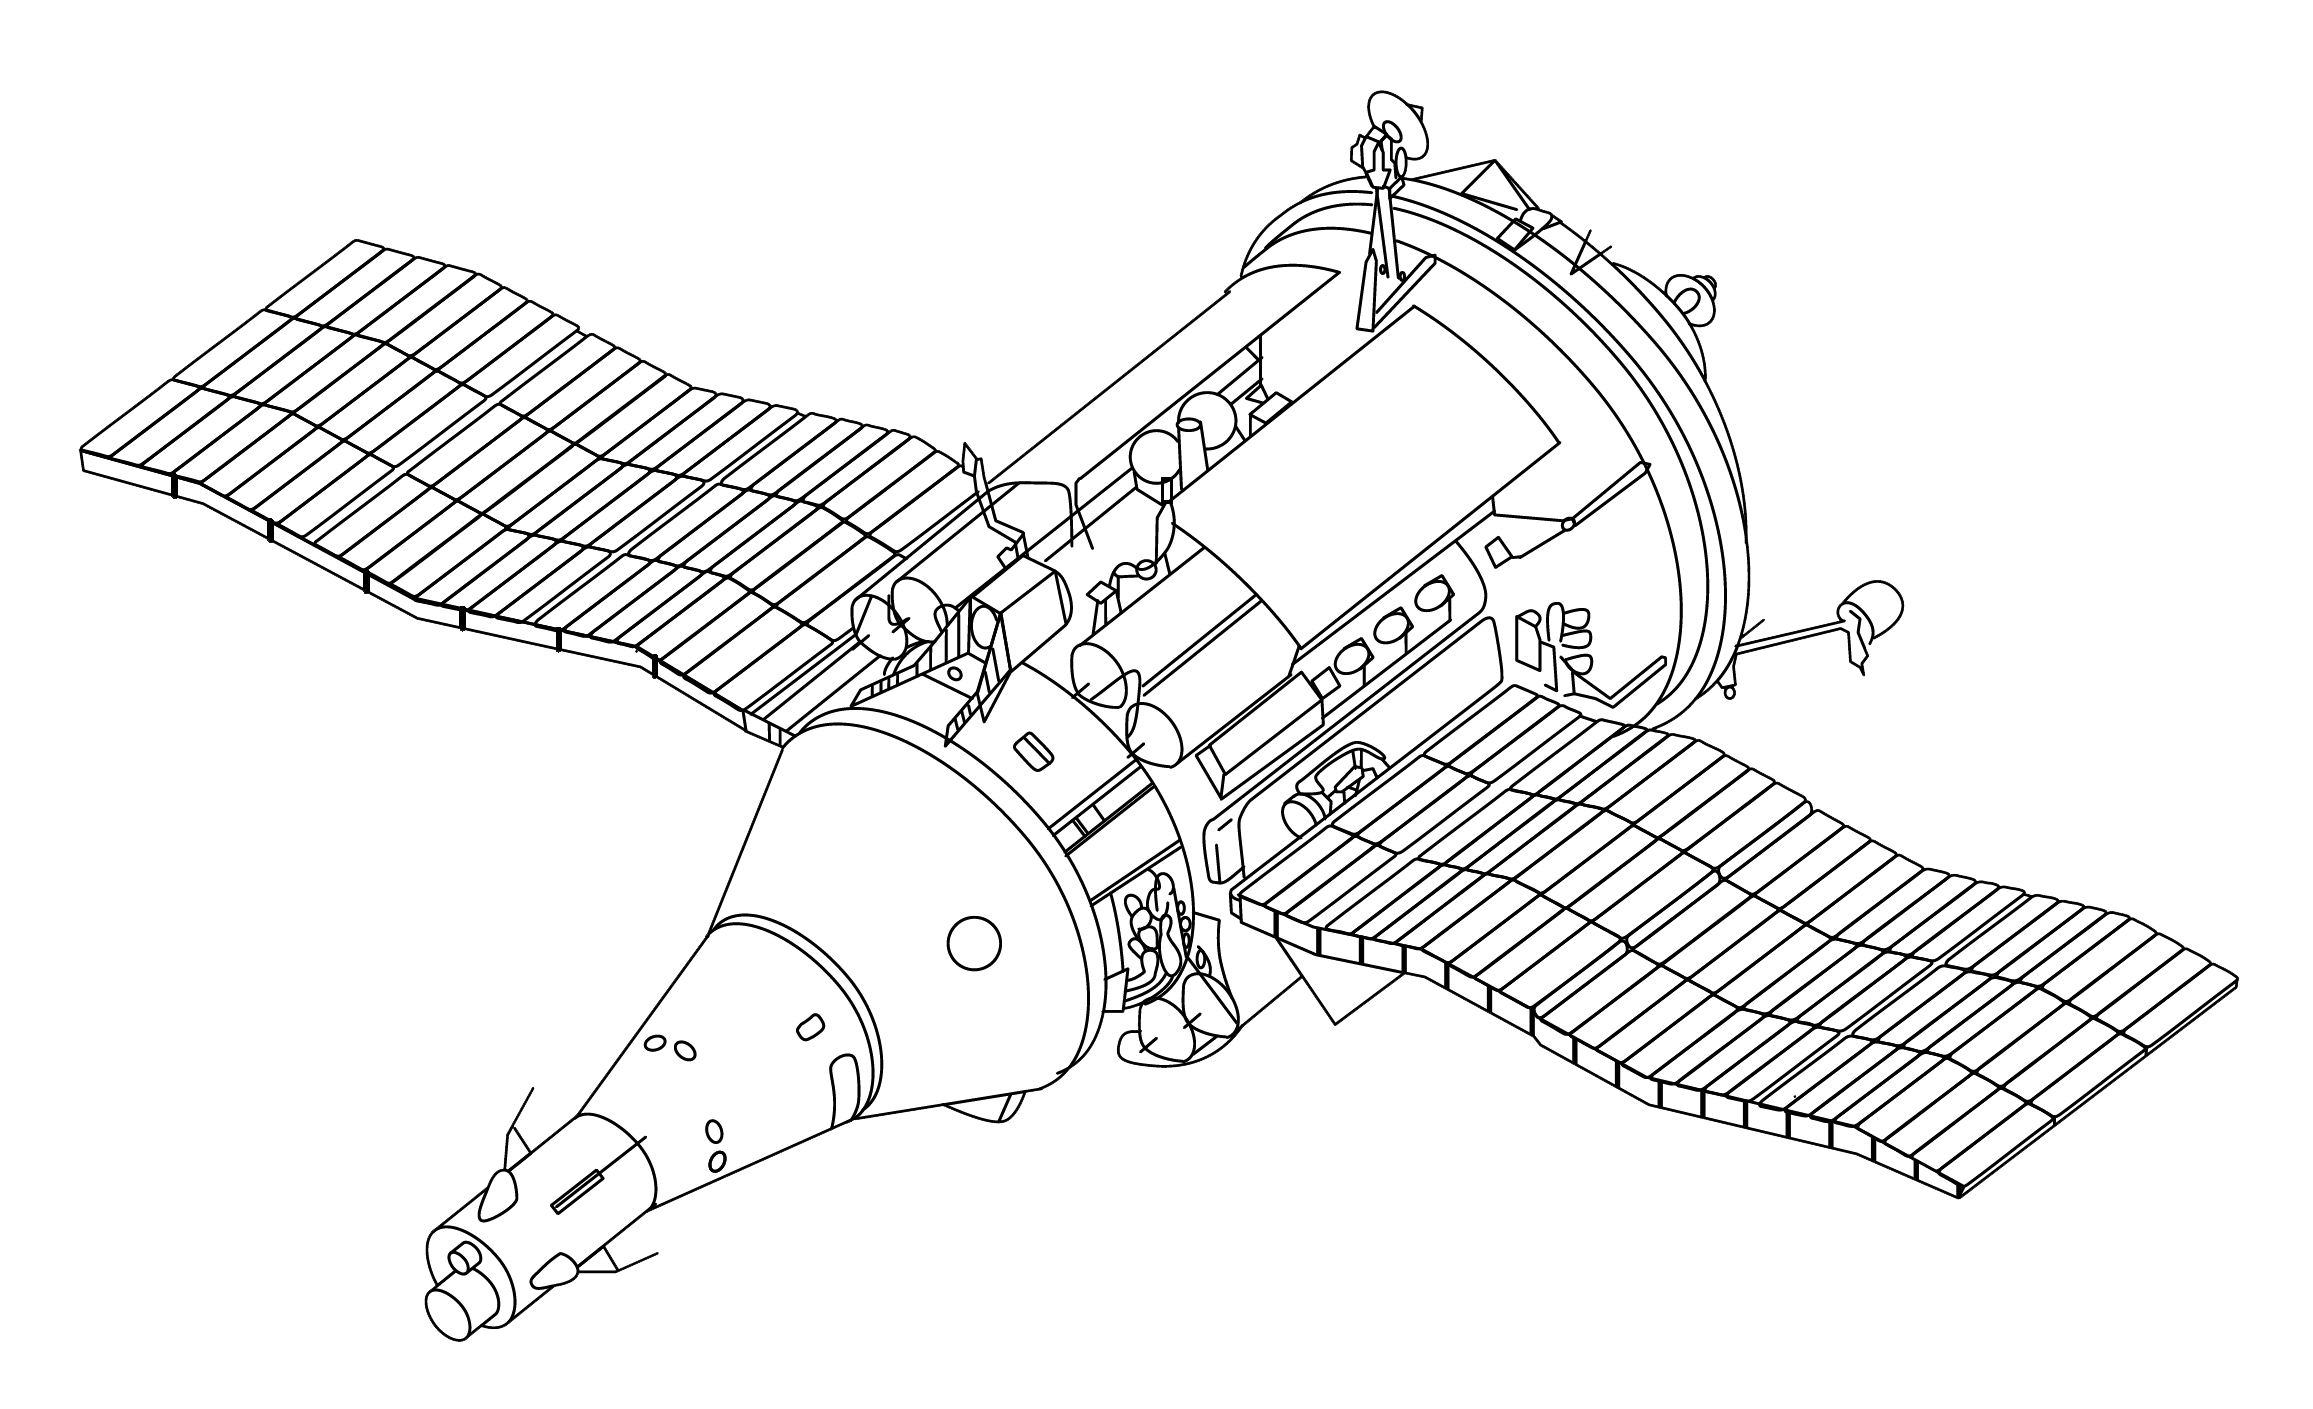 TKS_spacecraft_drawing.png